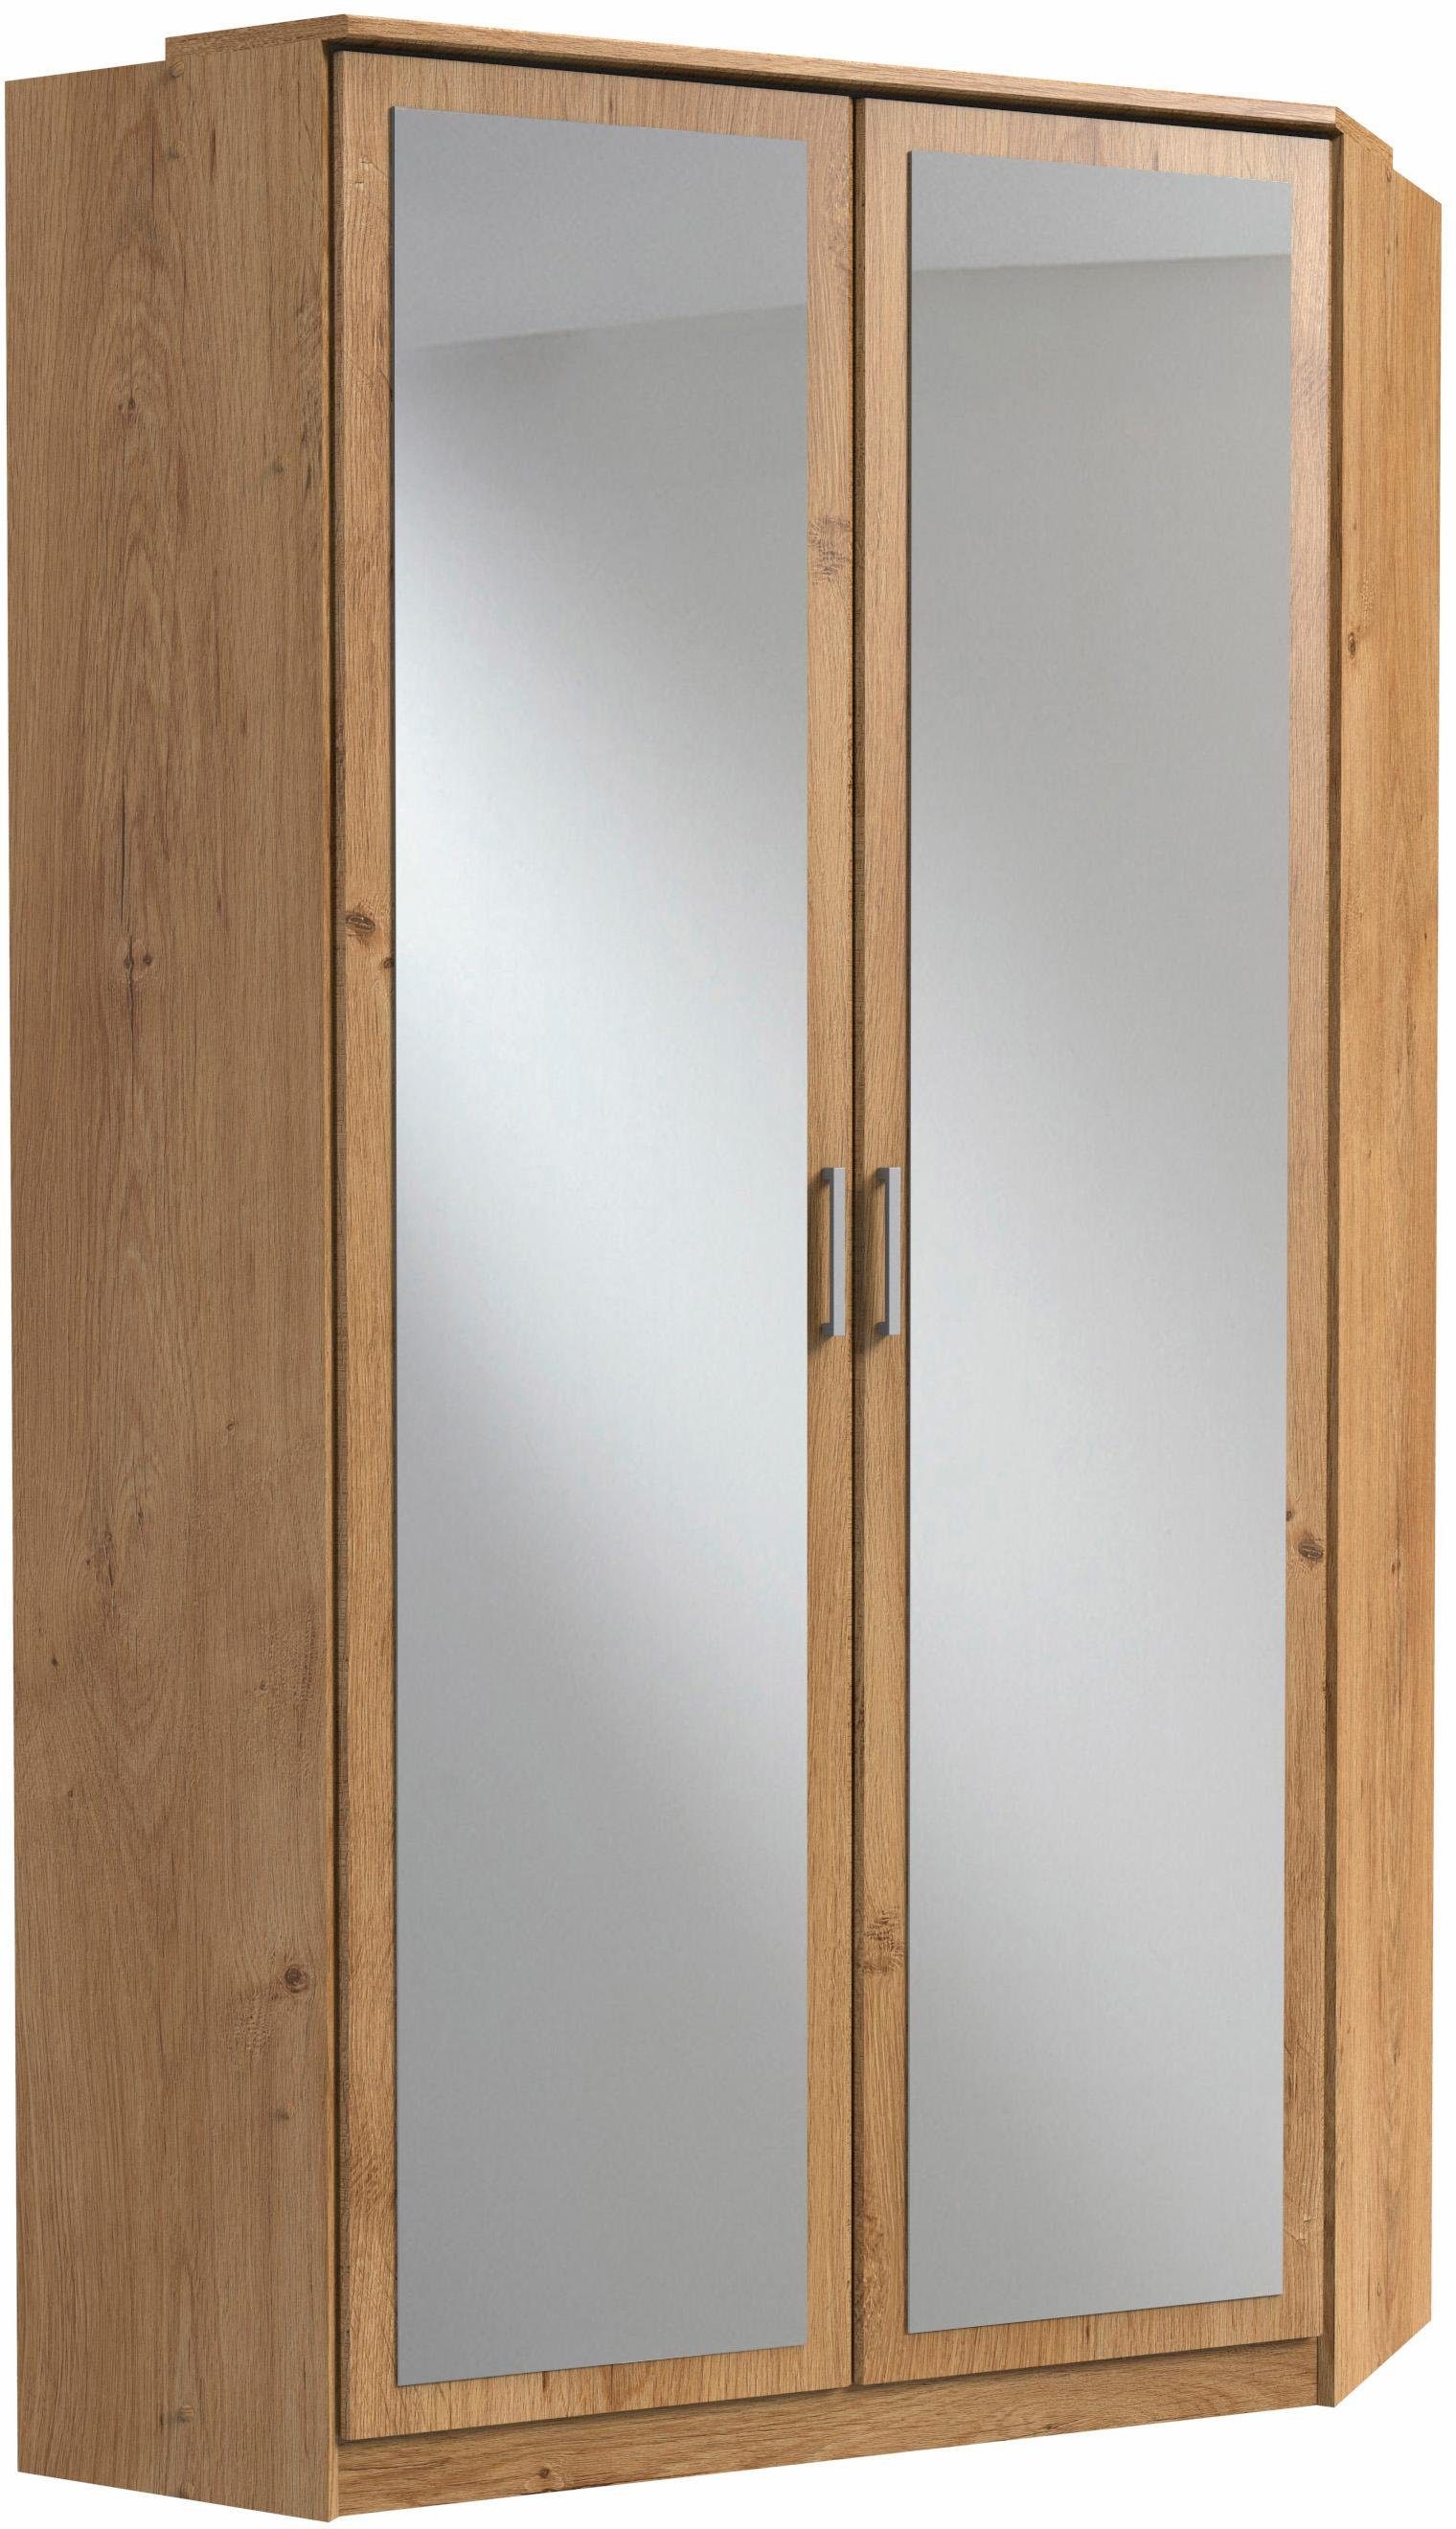 Wimex Eckkleiderschrank Click mit 2 Spiegeltüren plankeneichefarben